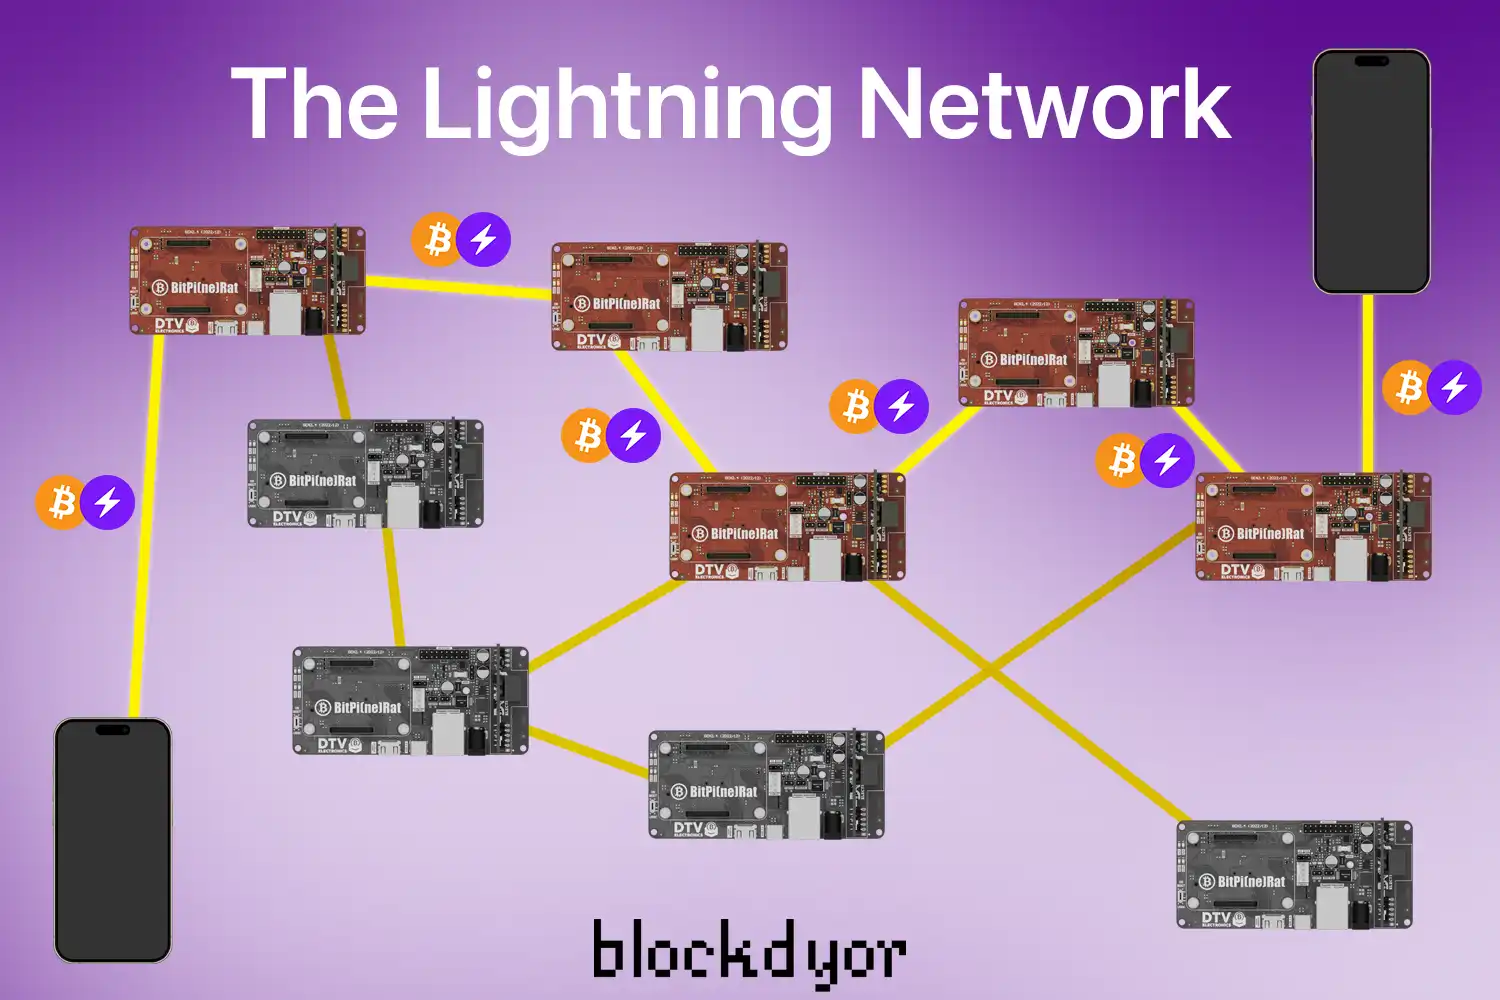 The Lightning Network